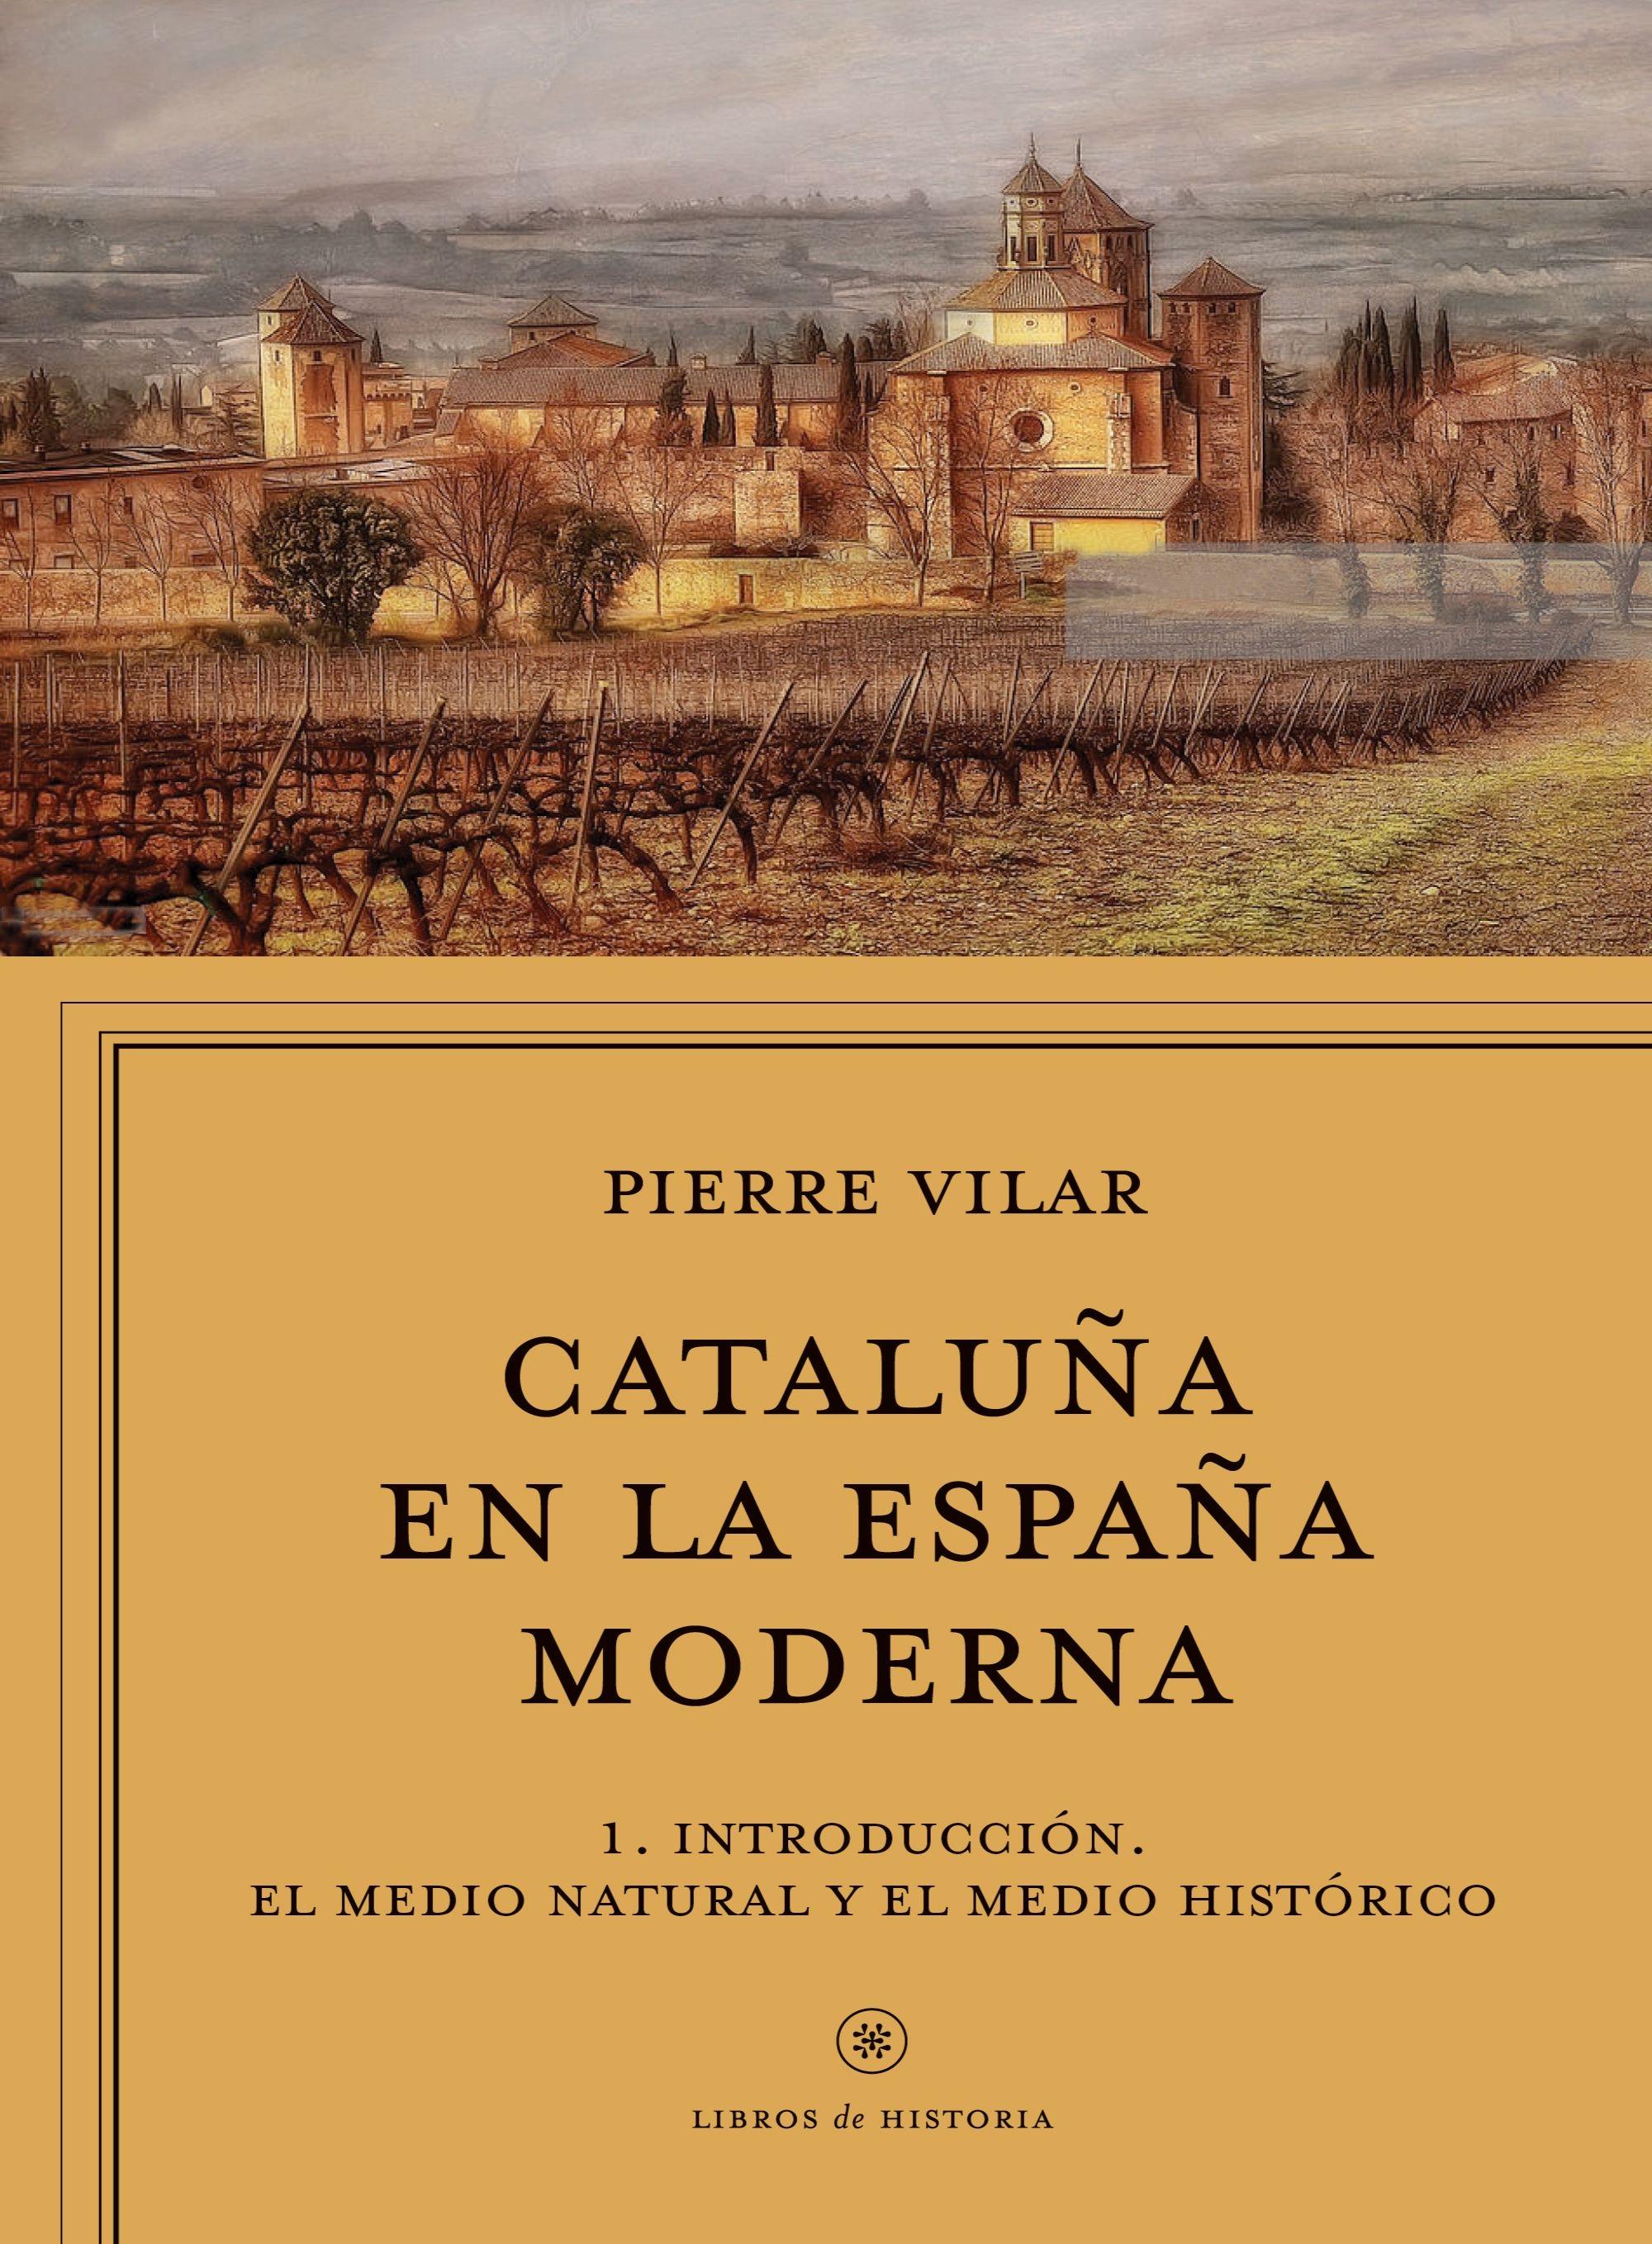 Cataluña en la España Moderna, Vol. 1 "El Medio Natural y el Medio Histórico. el Siglo Xviii: las Transformacio". 